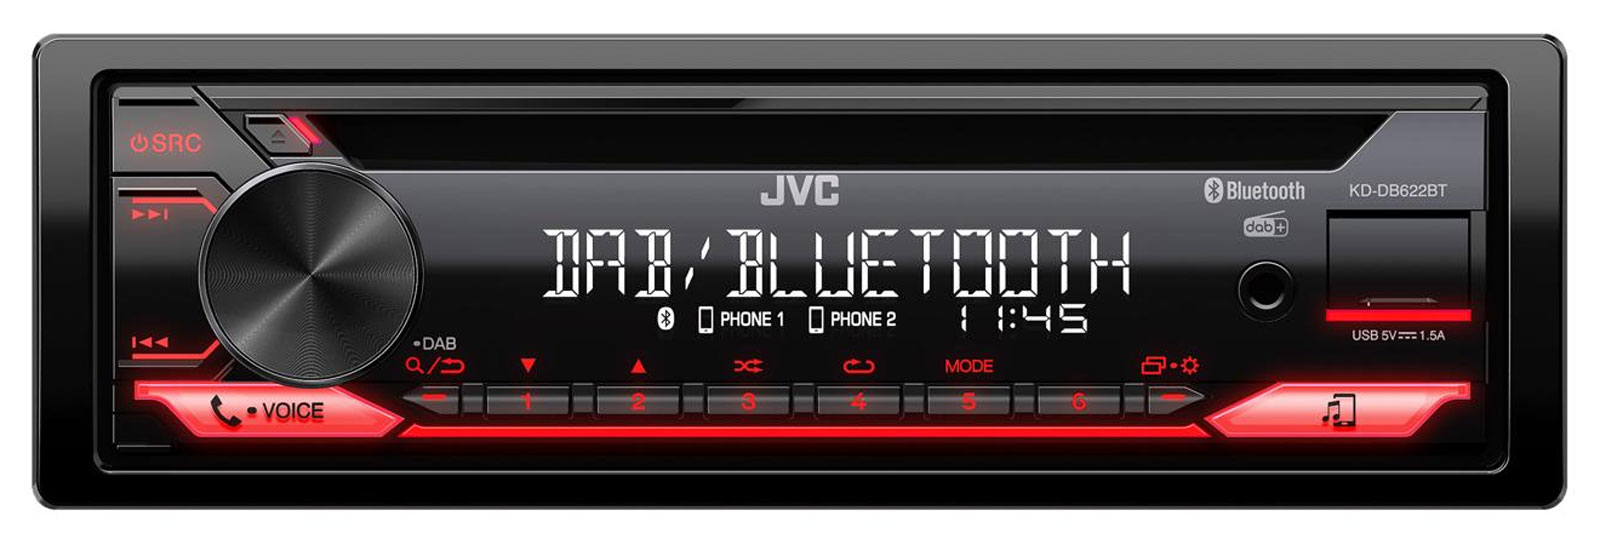 JVC KD-DB622BT - Autoradios 